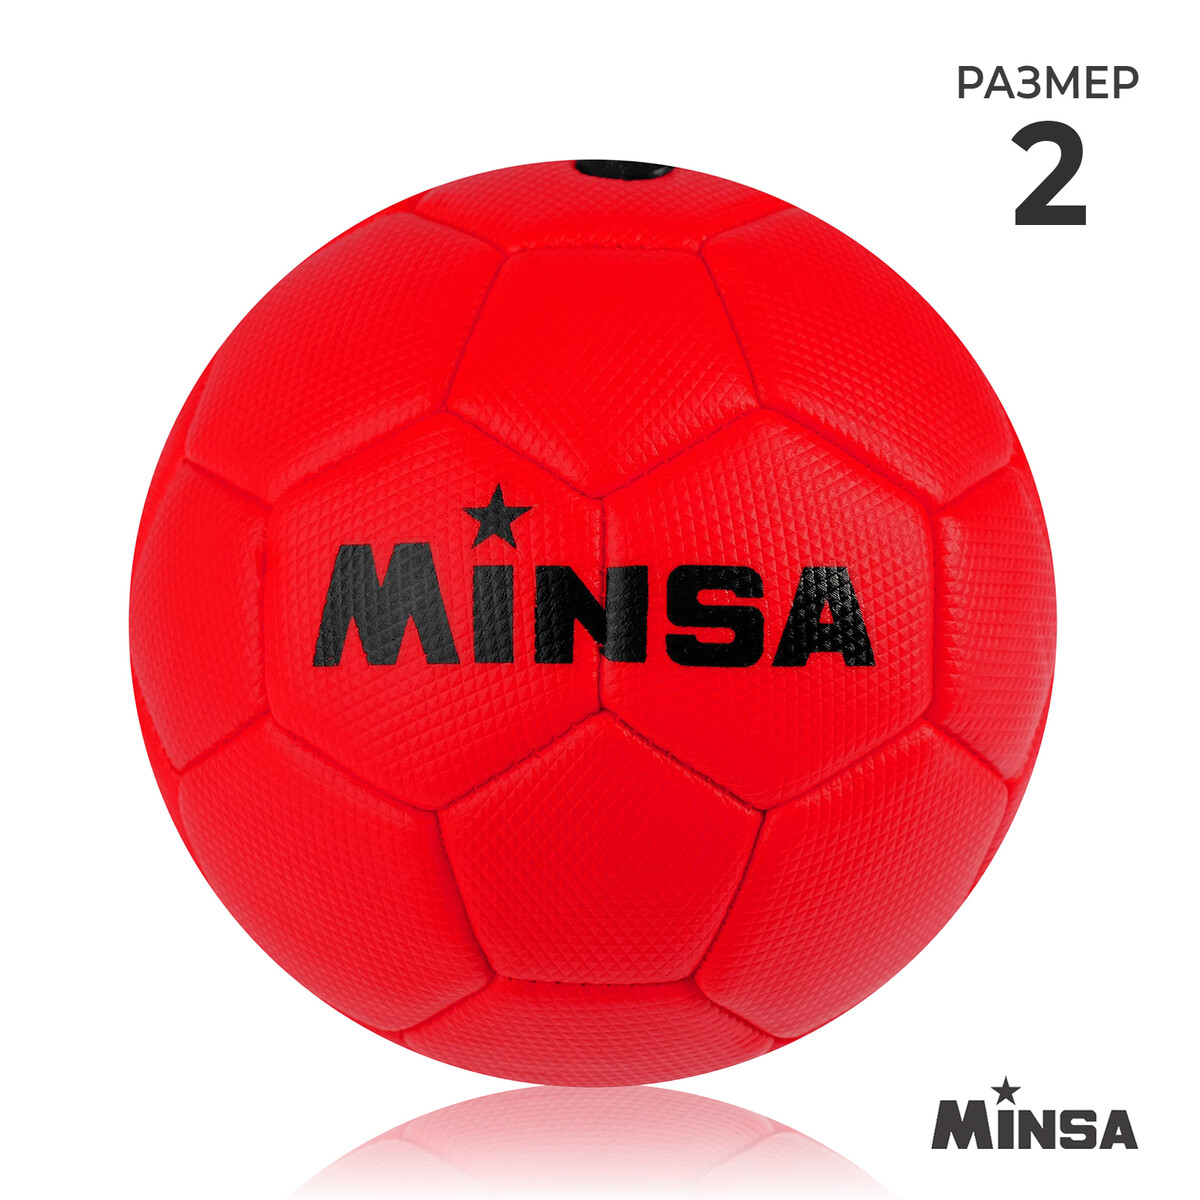 Мяч футбольный minsa, пвх, машинная сшивка, 32 панели, р. 2 мяч футбольный minsa classic пвх машинна сшивка 32 панели р 5